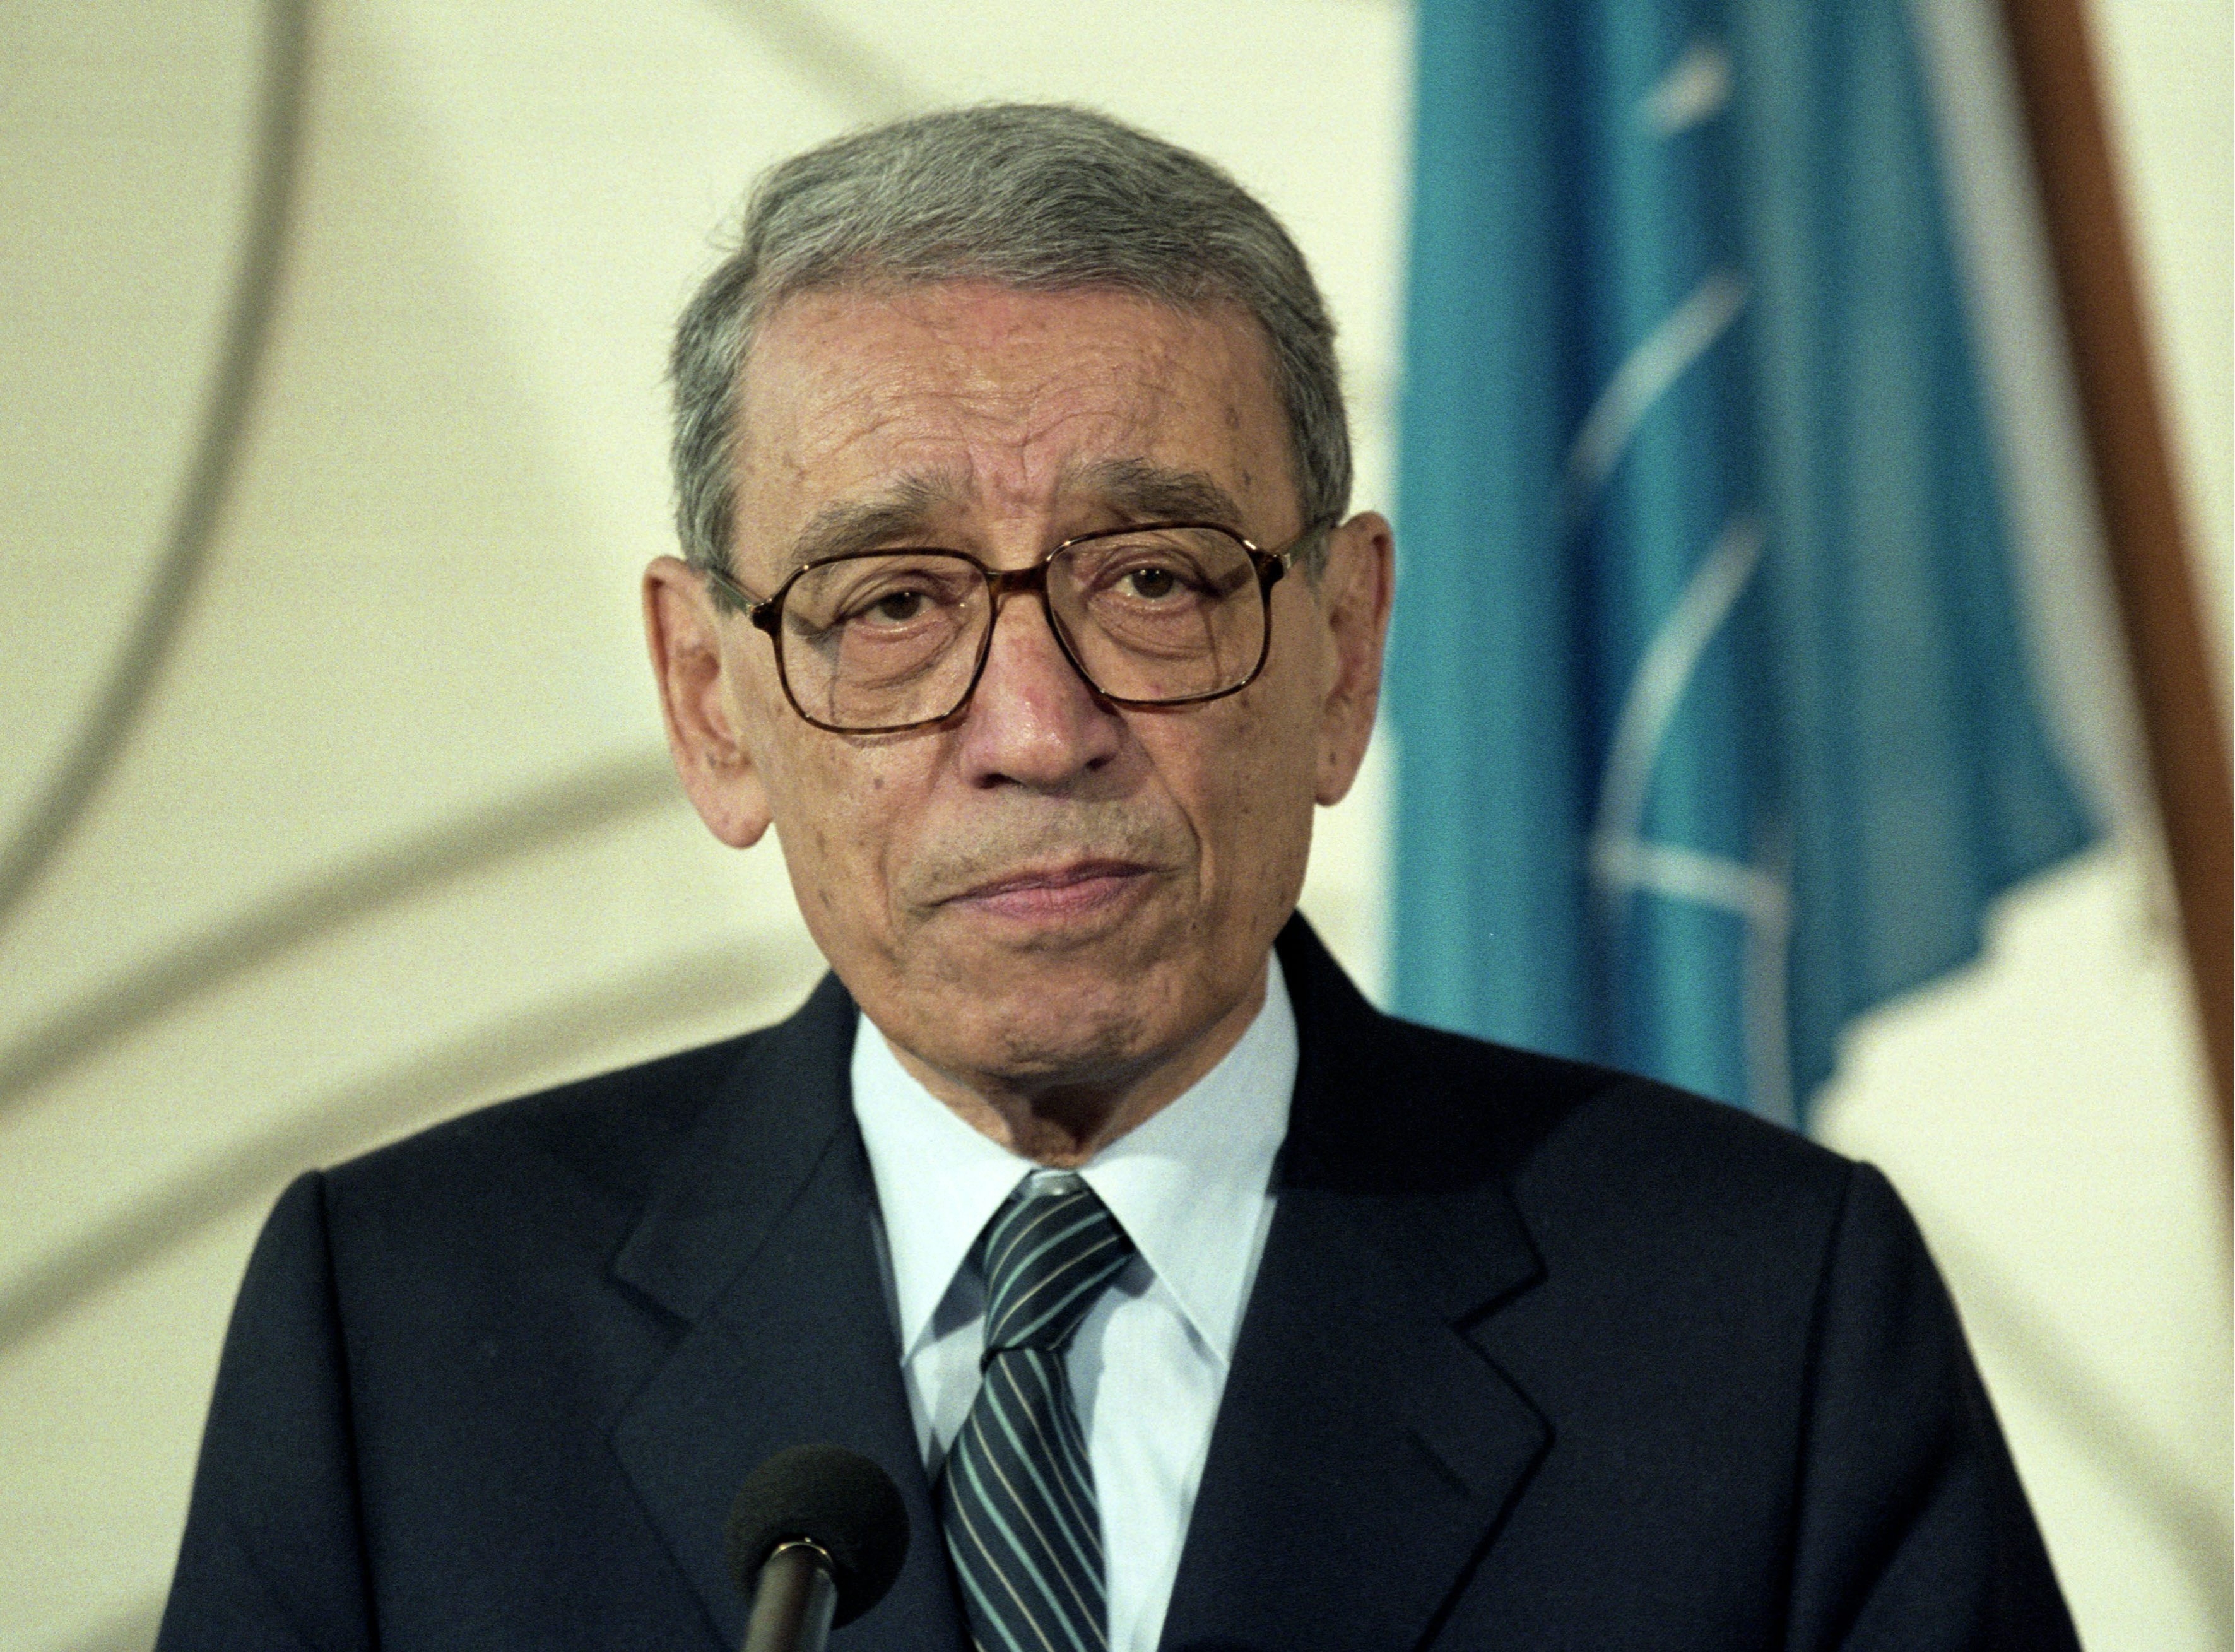 Boutros Boutros-Ghali, fostul secretar general al ONU, a murit la varsta de 93 de ani